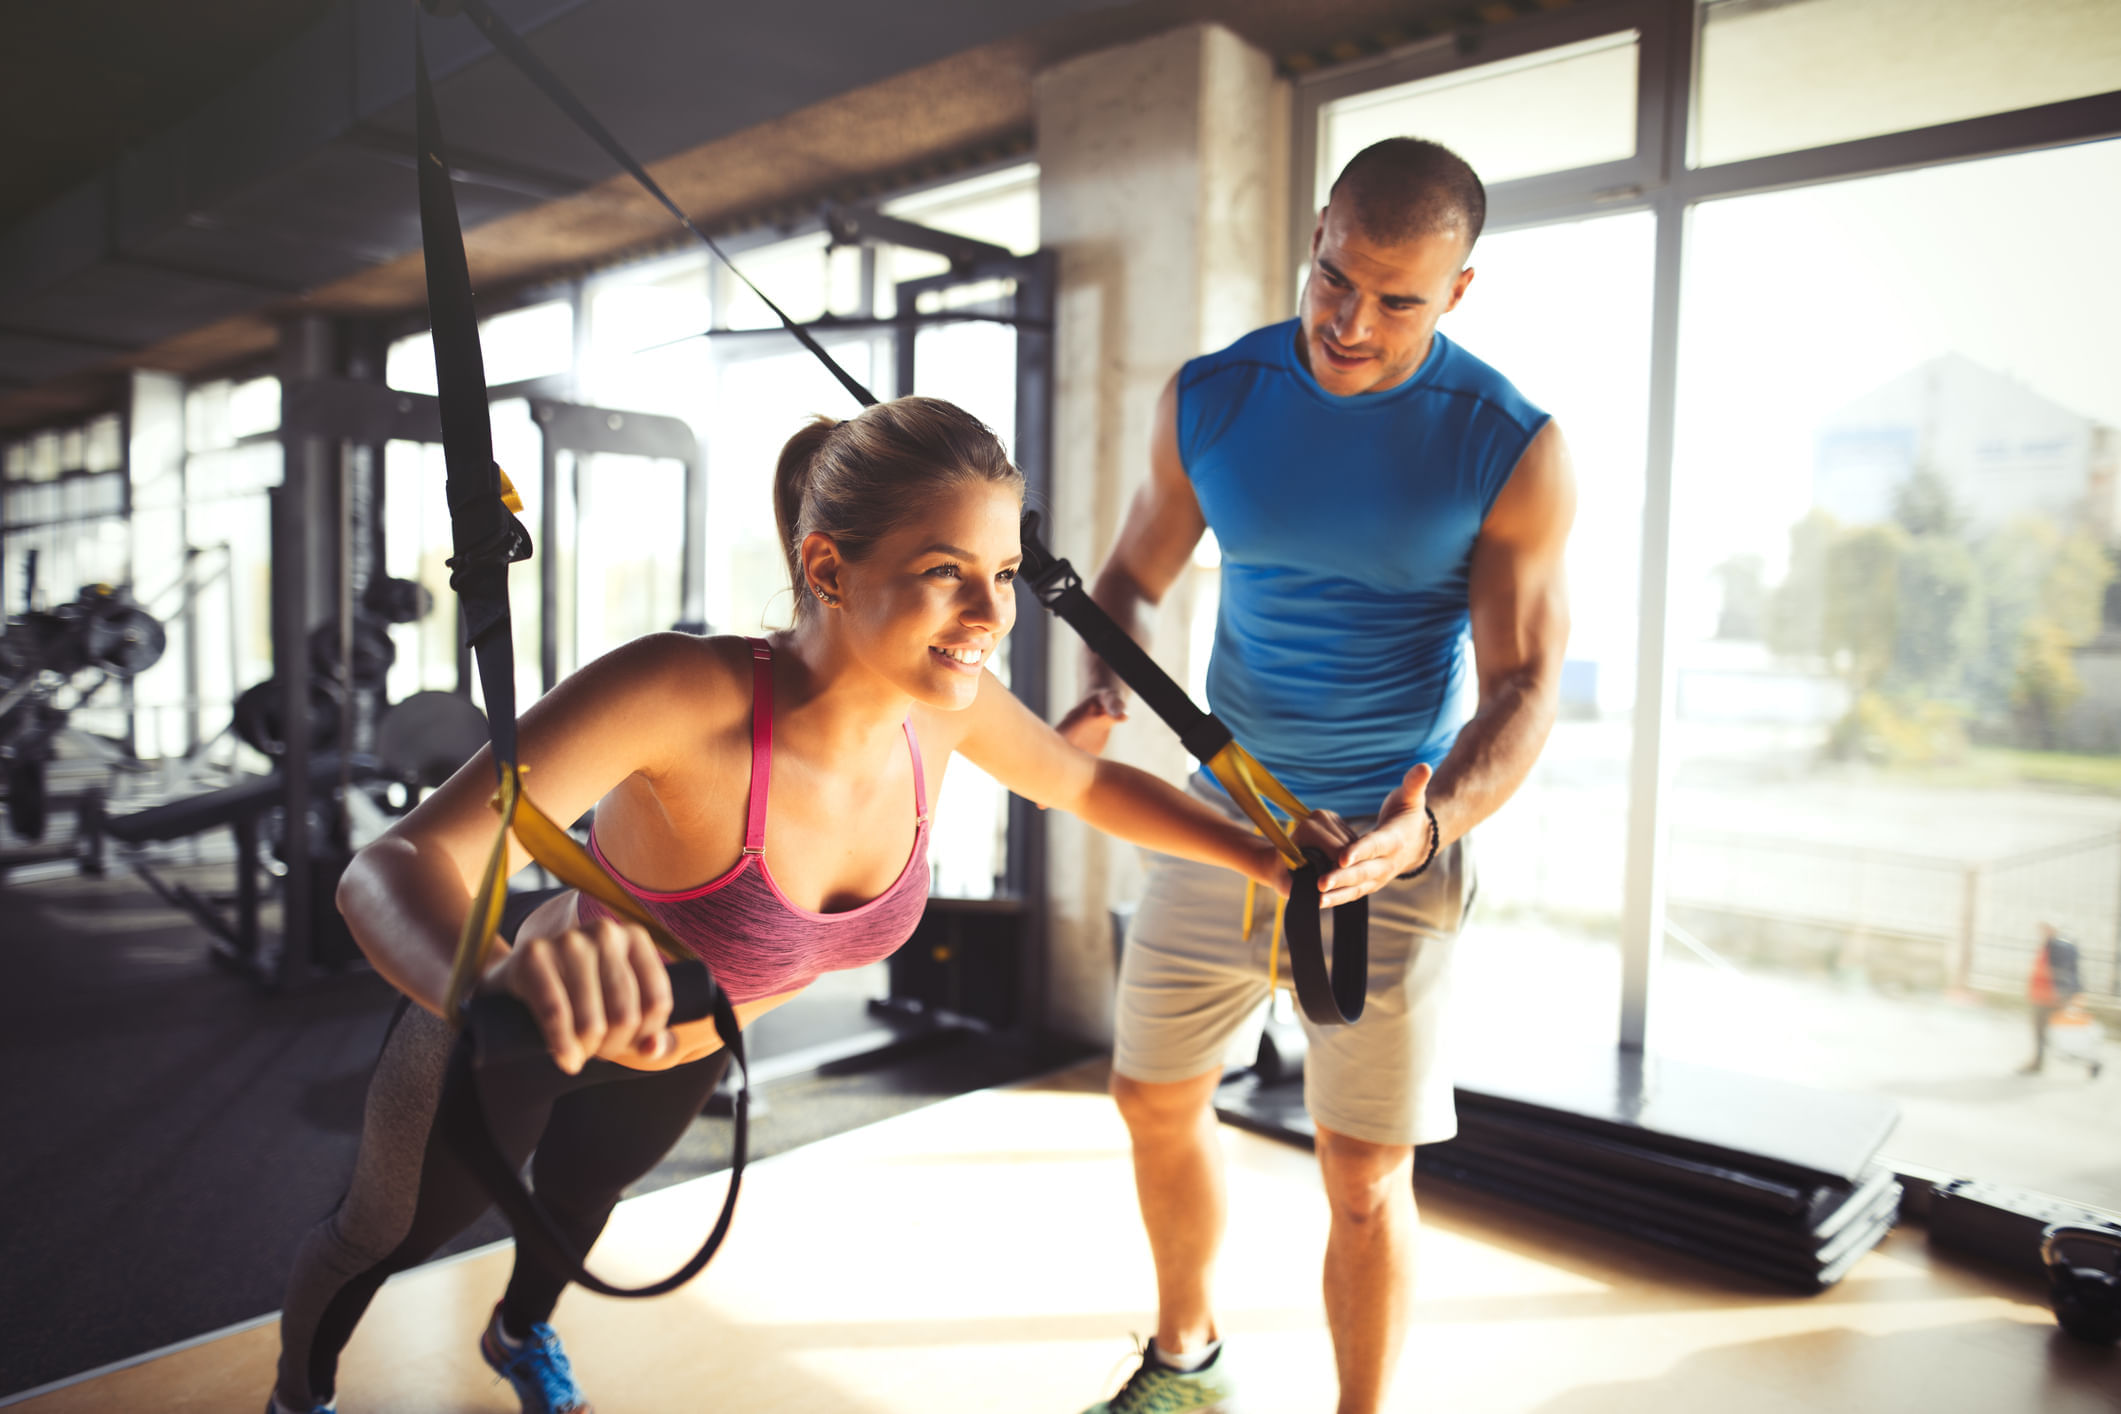 Formação em Musculação, Personal Trainer e Avaliação Física Presencial –  Fitness Mais